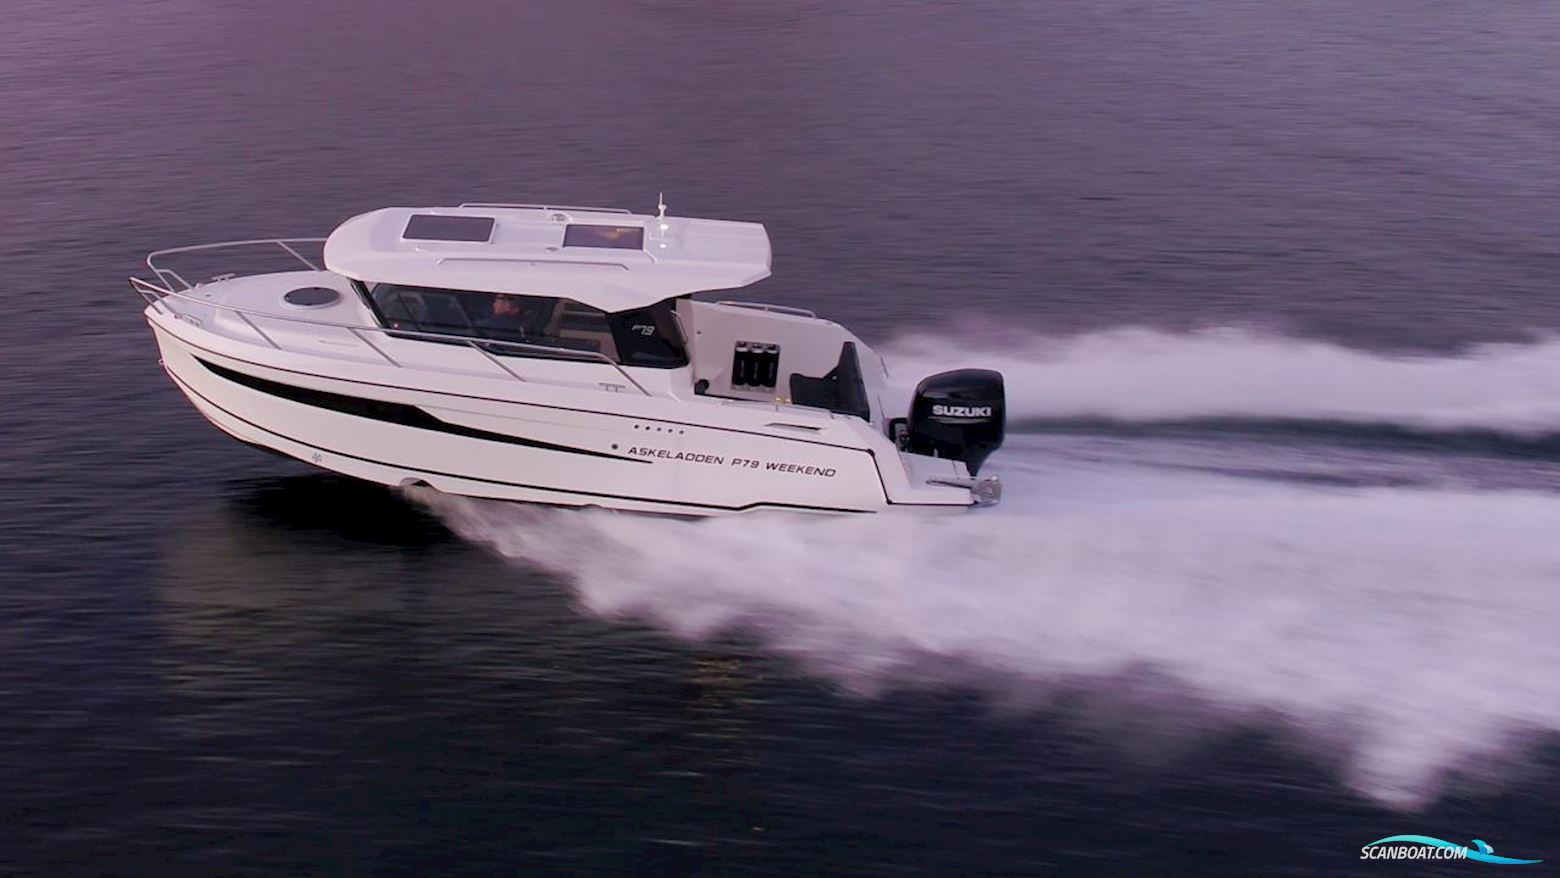 Askeladden P79 Weekend Motorboot 2023, mit Suzuki motor, Sweden